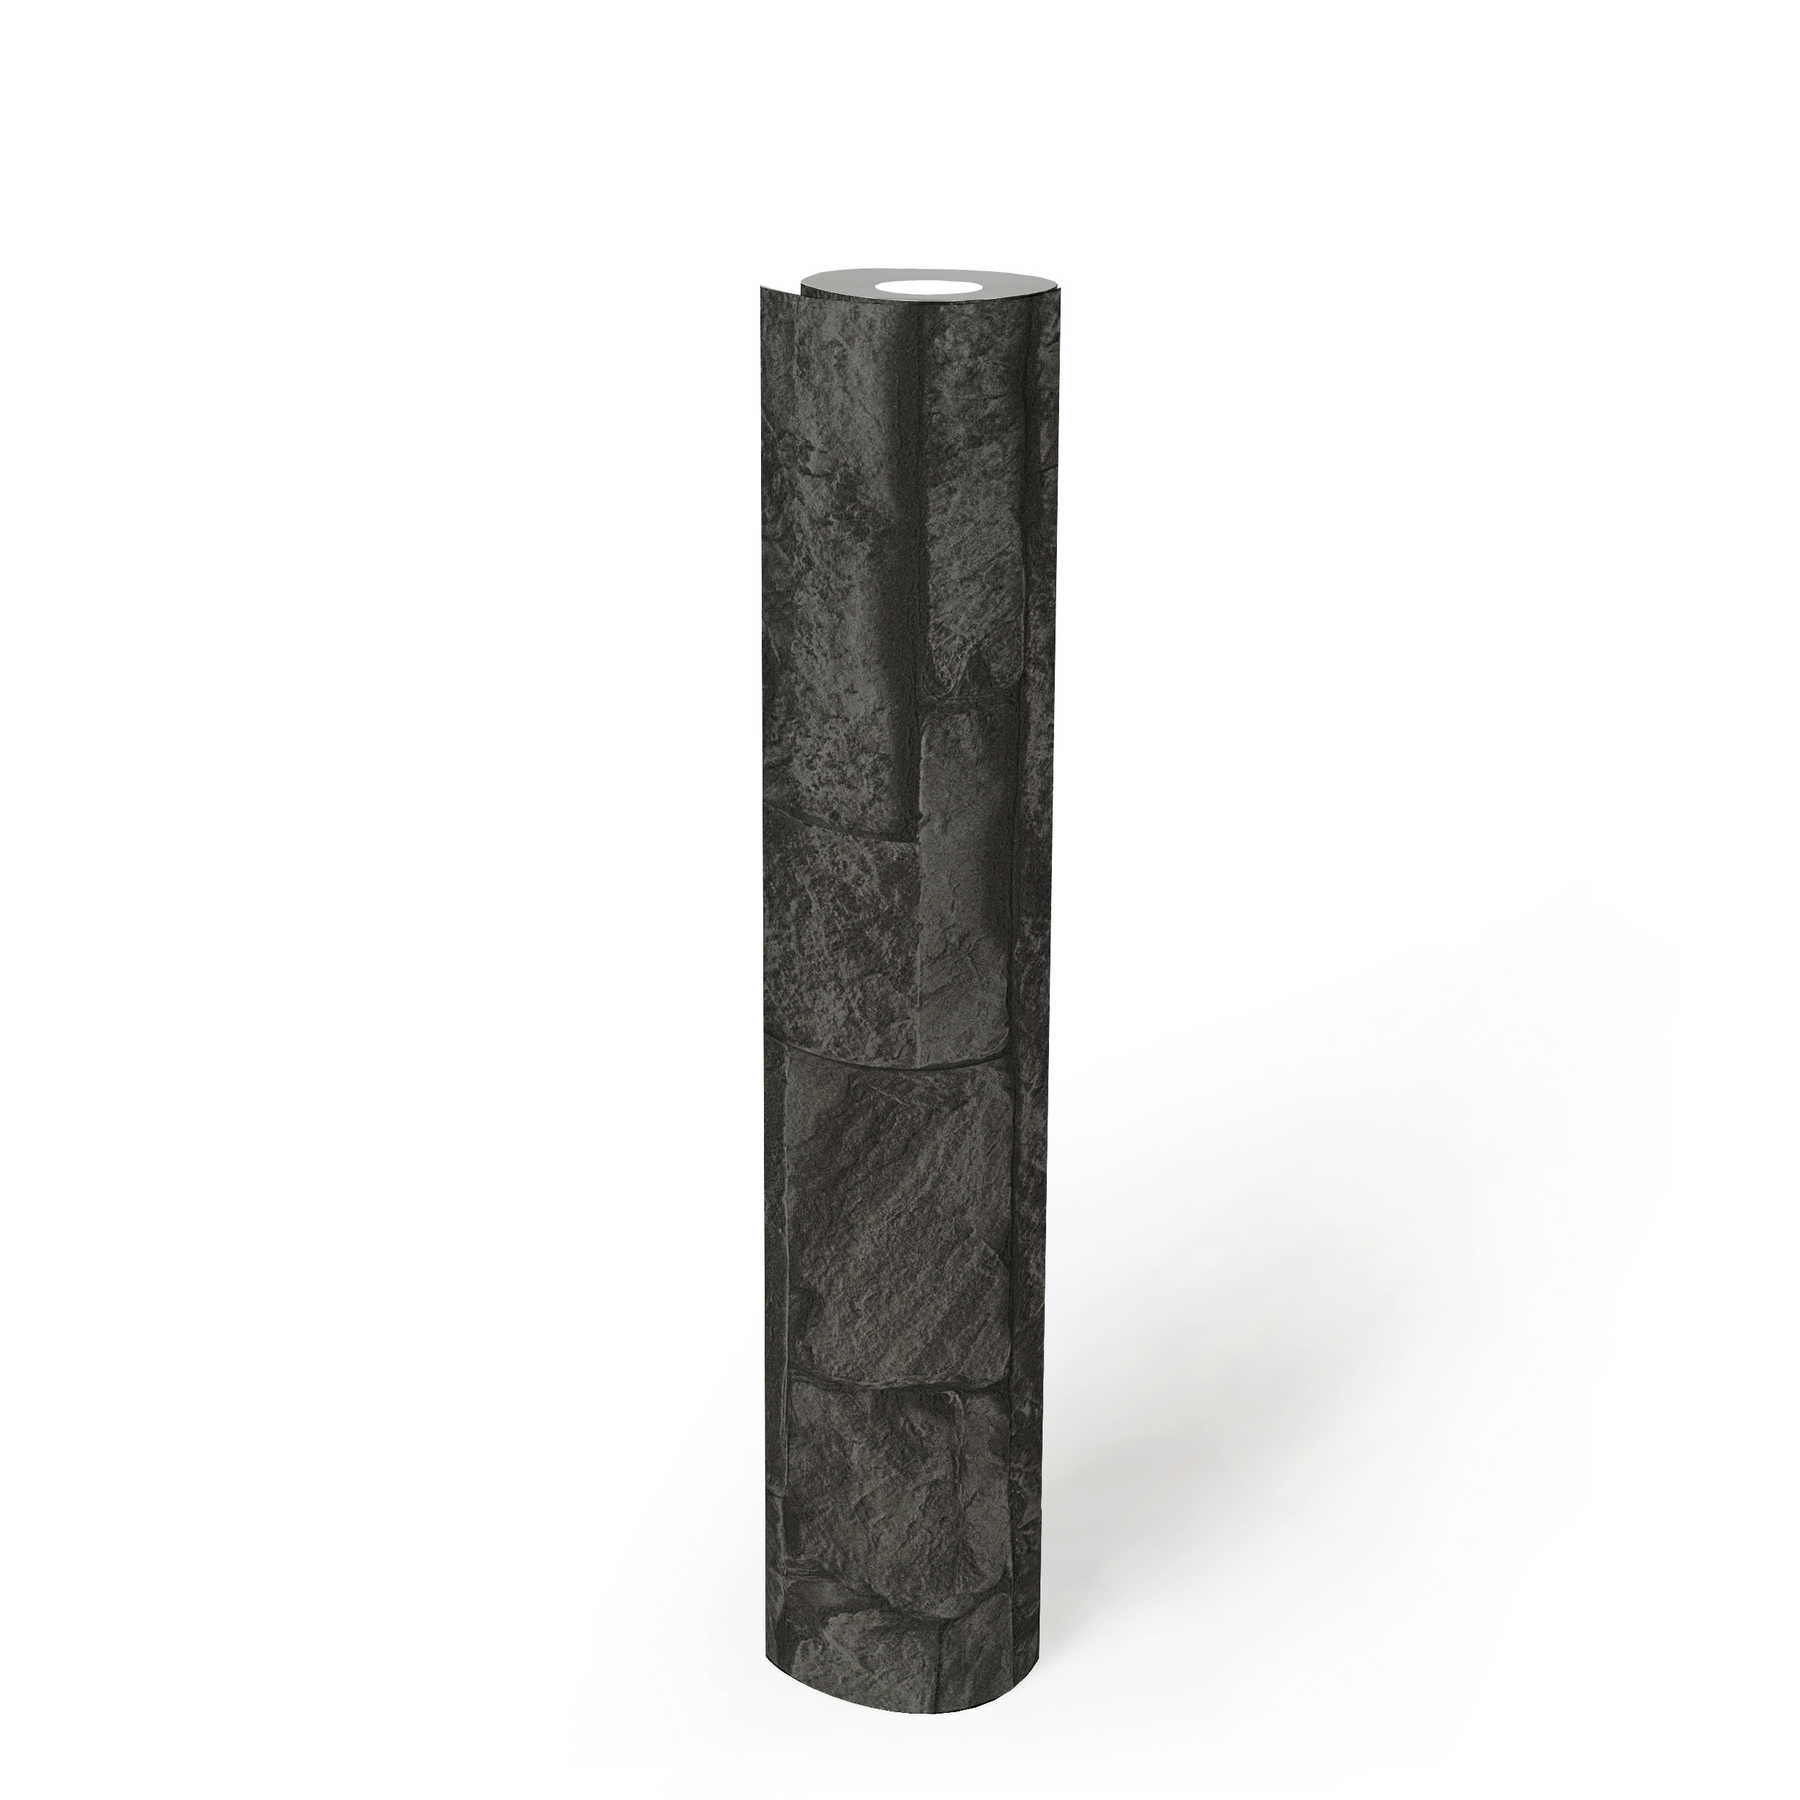             Papel pintado negro con aspecto de piedra, detallado y realista - Gris, Negro
        